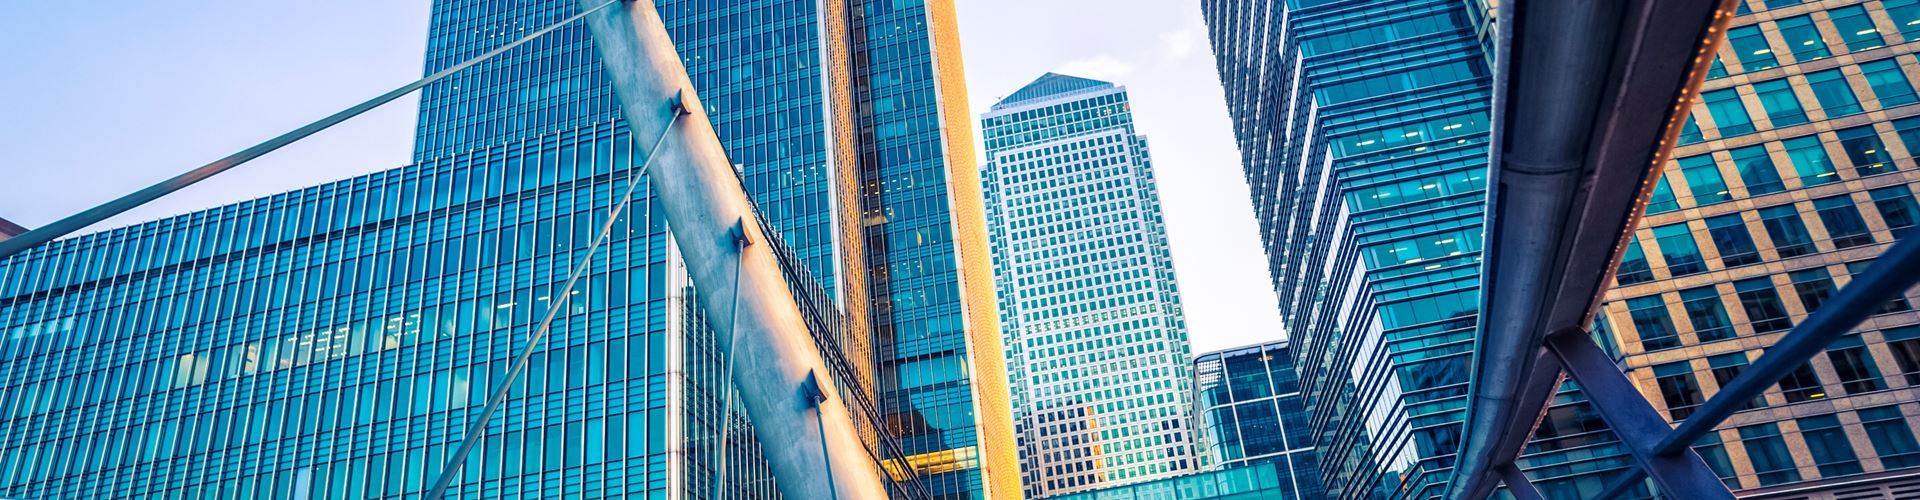 London will remain a top FinTech hub